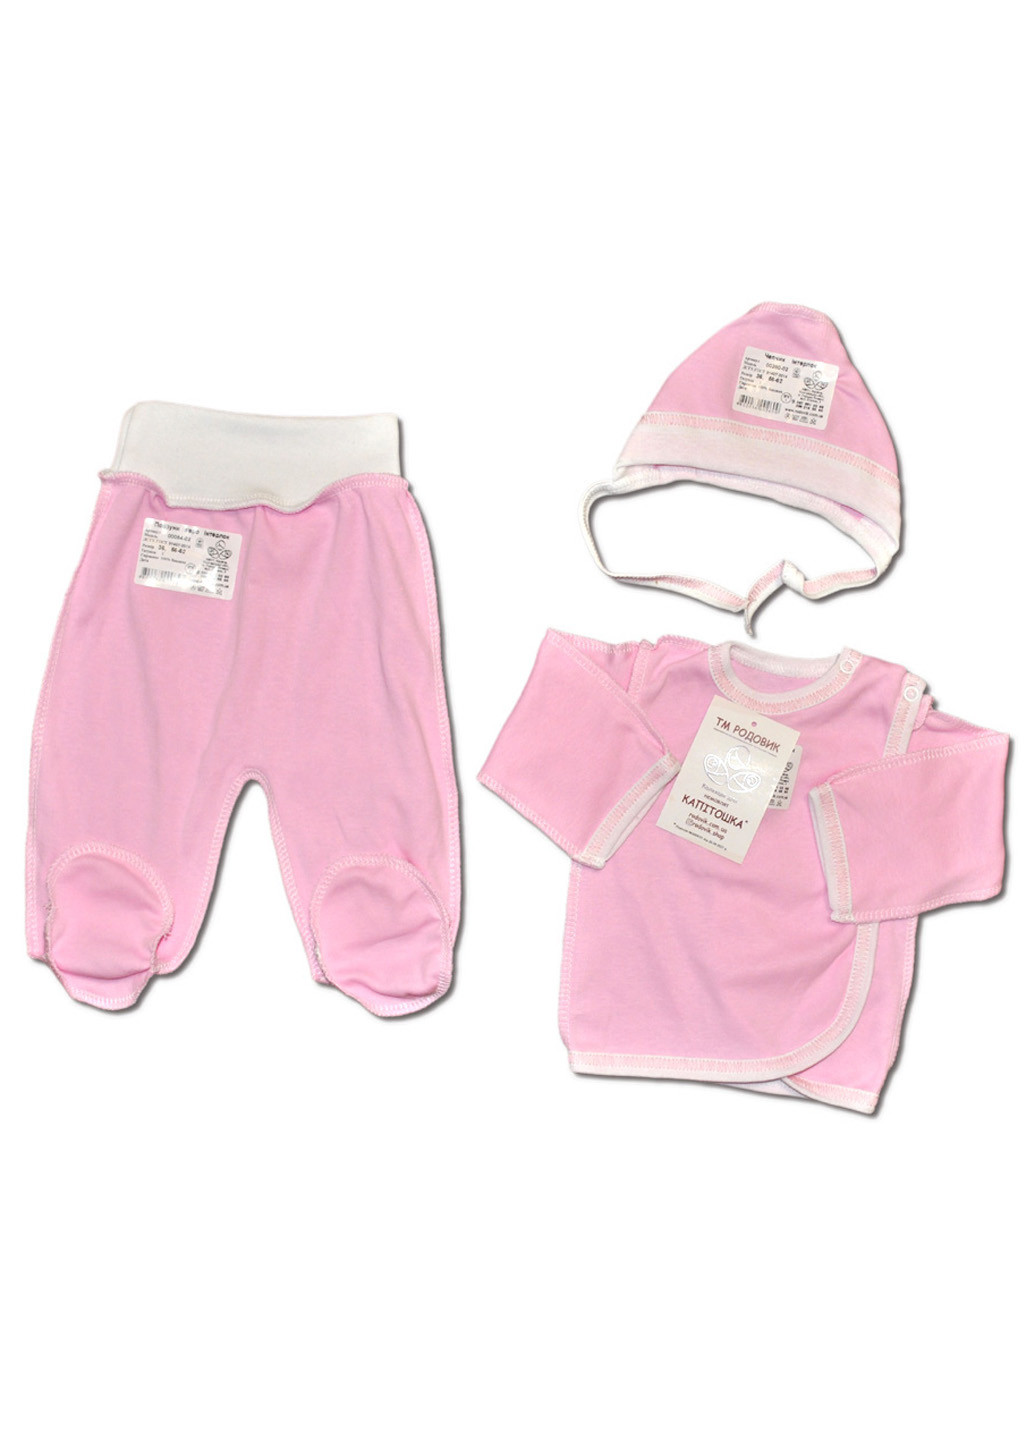 Рожевий демісезонний костюм для новонароджених №2 (3 предмети) тм колекція капітошка трійка Родовик костюм 02-Р-2